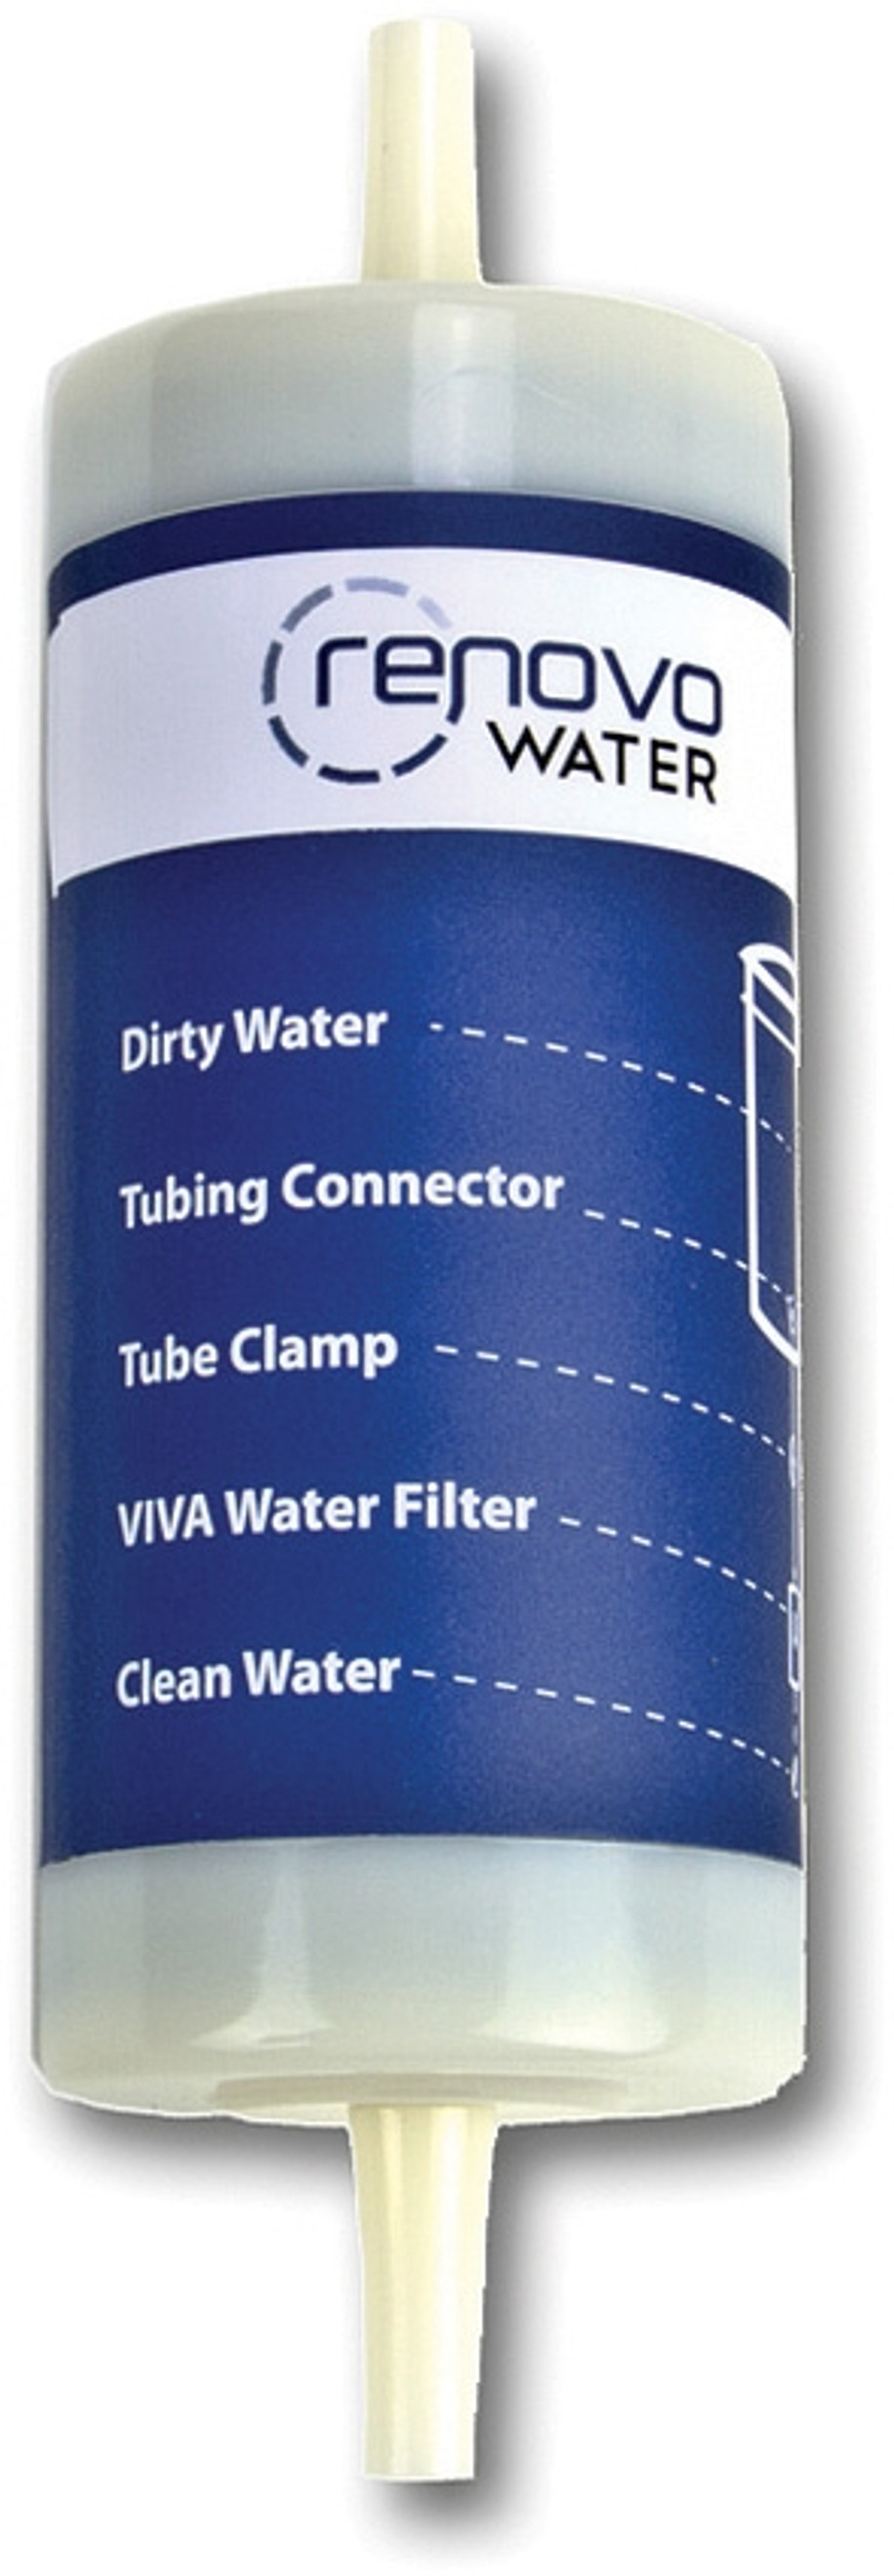 VIVA Inline Water Filter